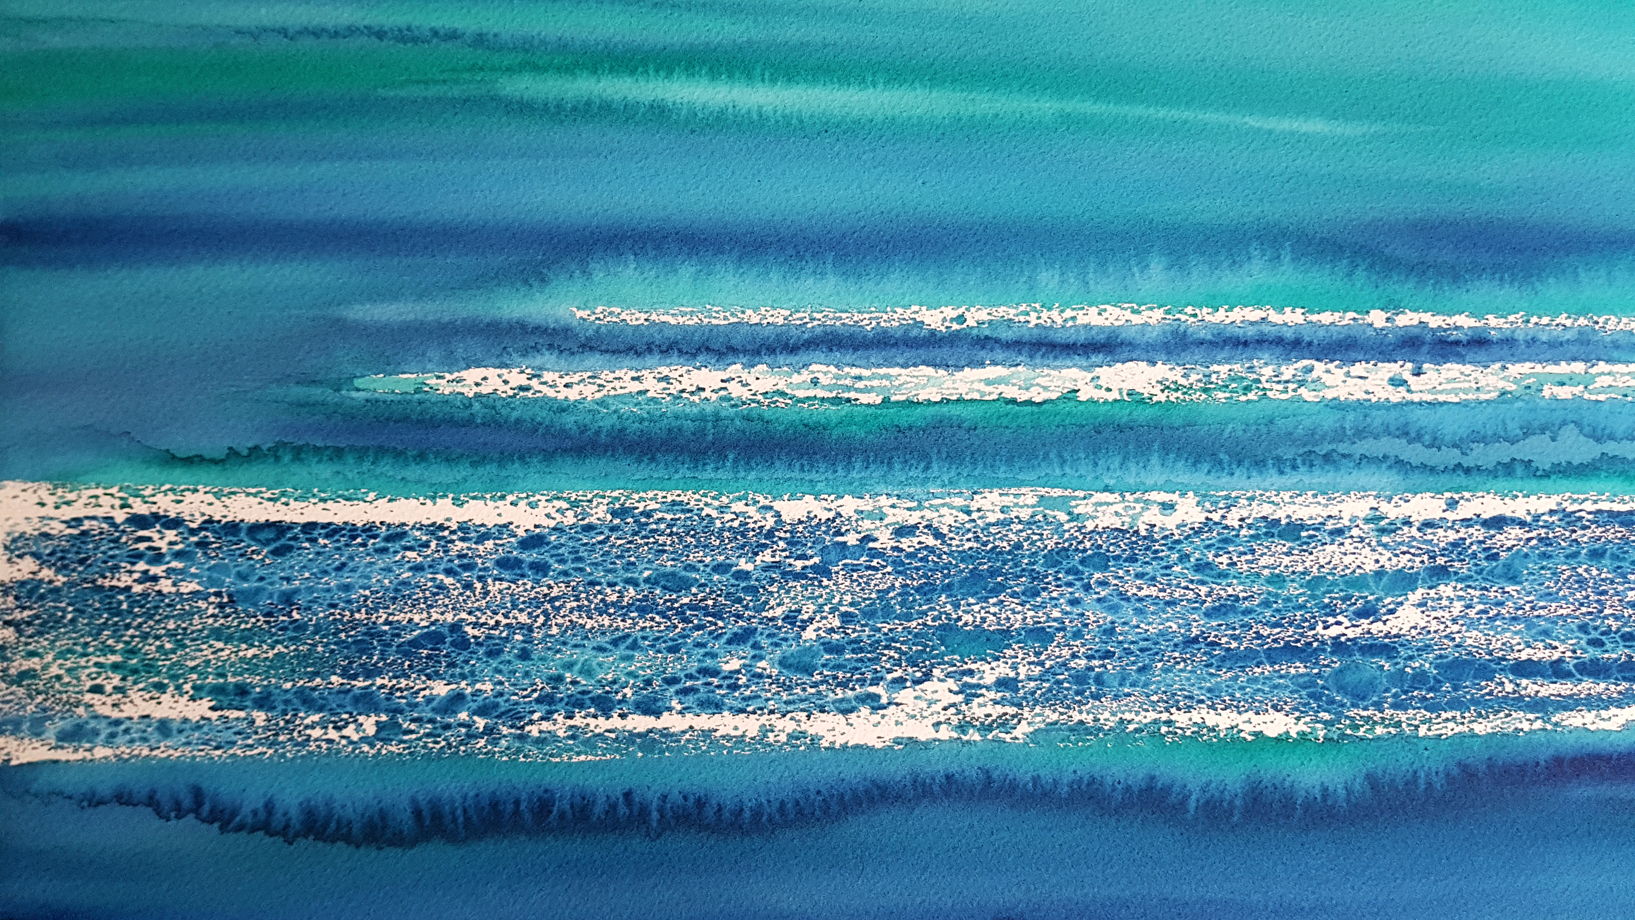 Картина из авторской серии "Морские сны - абстракция #1", размер: 74 х 55 см